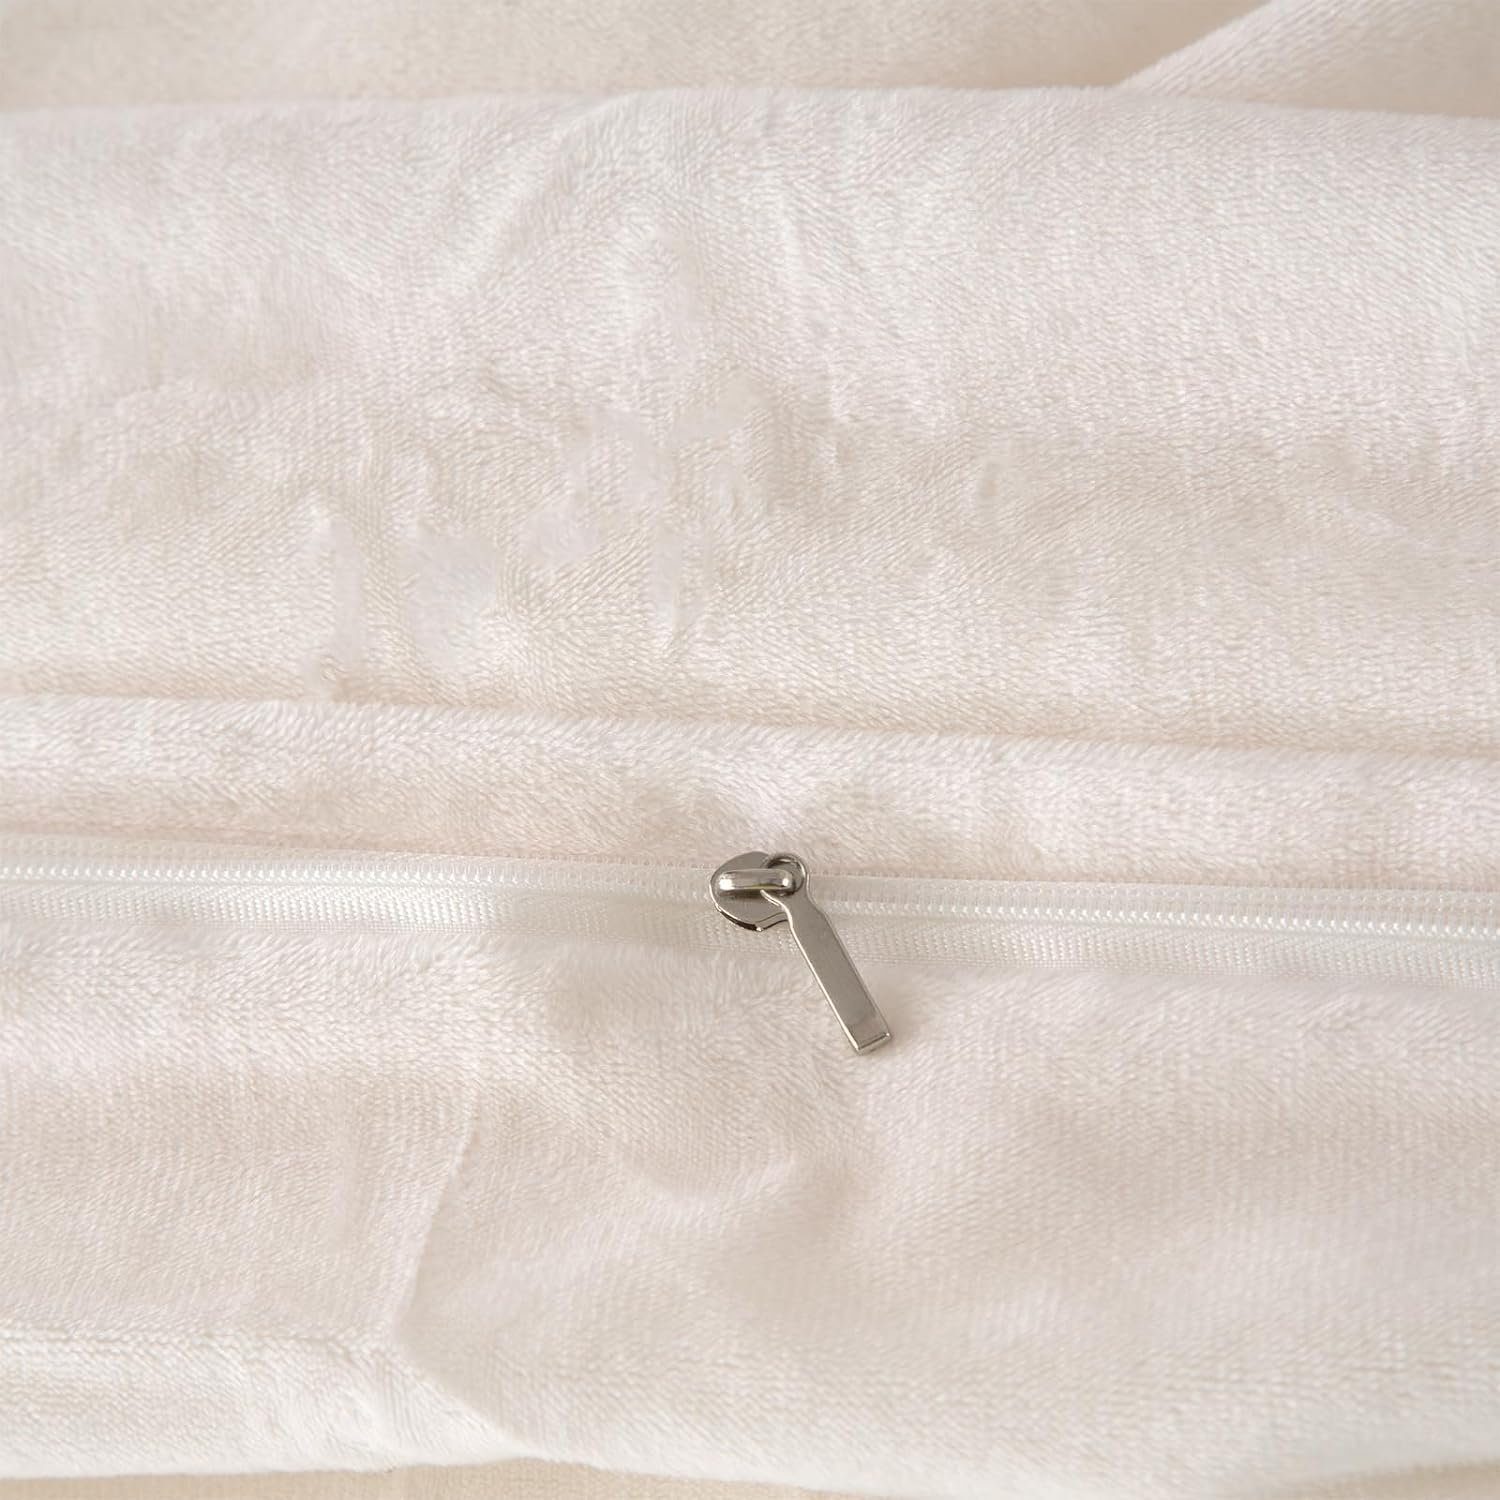 Bettwäsche Plüsch Mutoy, Deckenbezug Bettbezug, 80x80 Flanell Felloptik,Warme flauschige Reißverschluss Bettwäsche,Extra Kissenbezug mit Weiß und